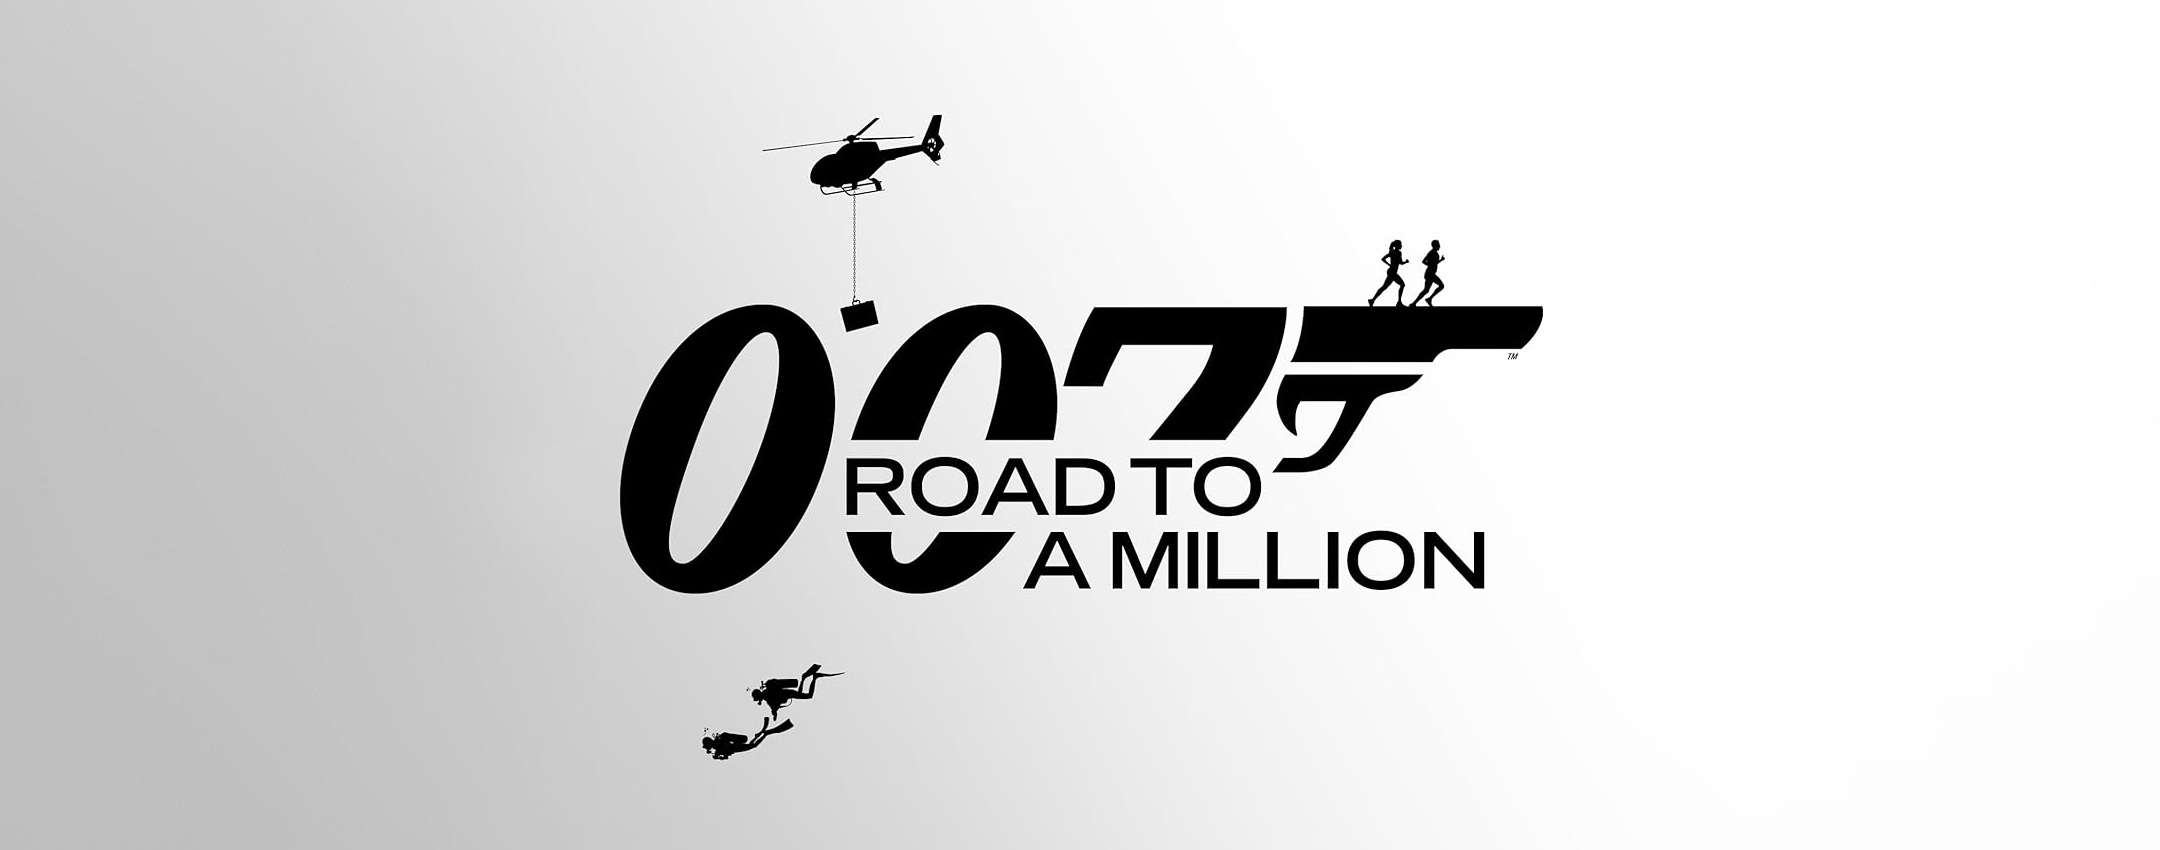 Prime Video, ecco “007: Road to a Million”: come vederlo in streaming